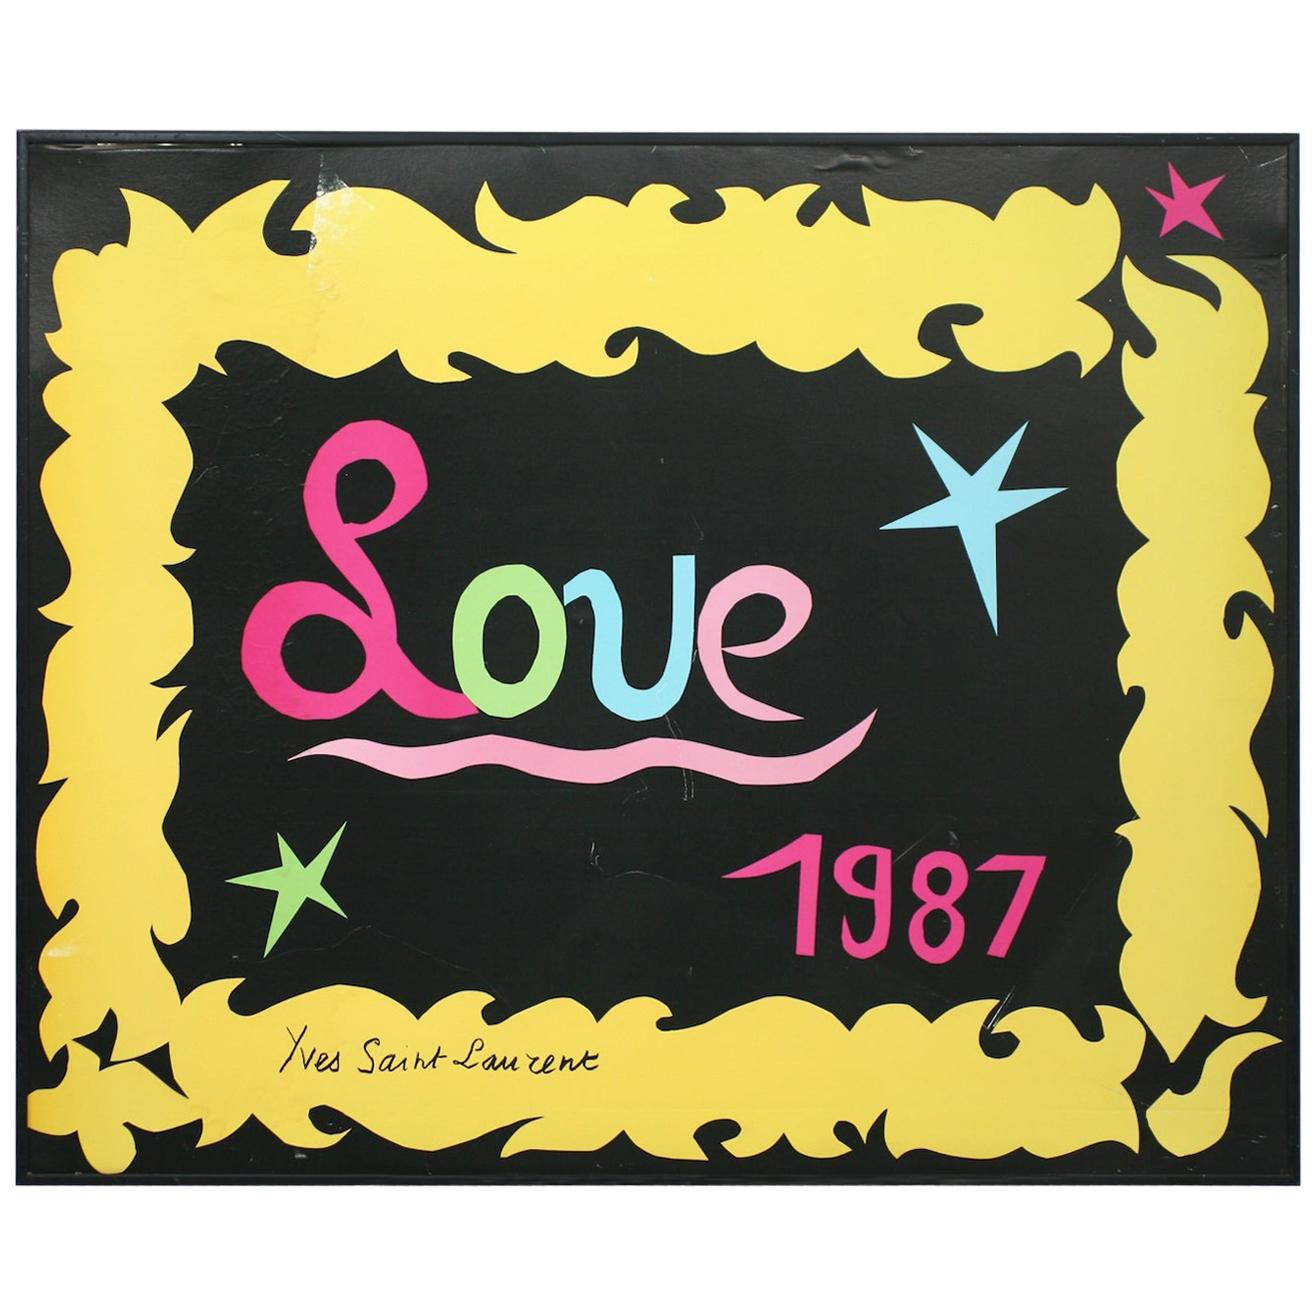 Yves Saint Laurent 1987 "LOVE" Poster